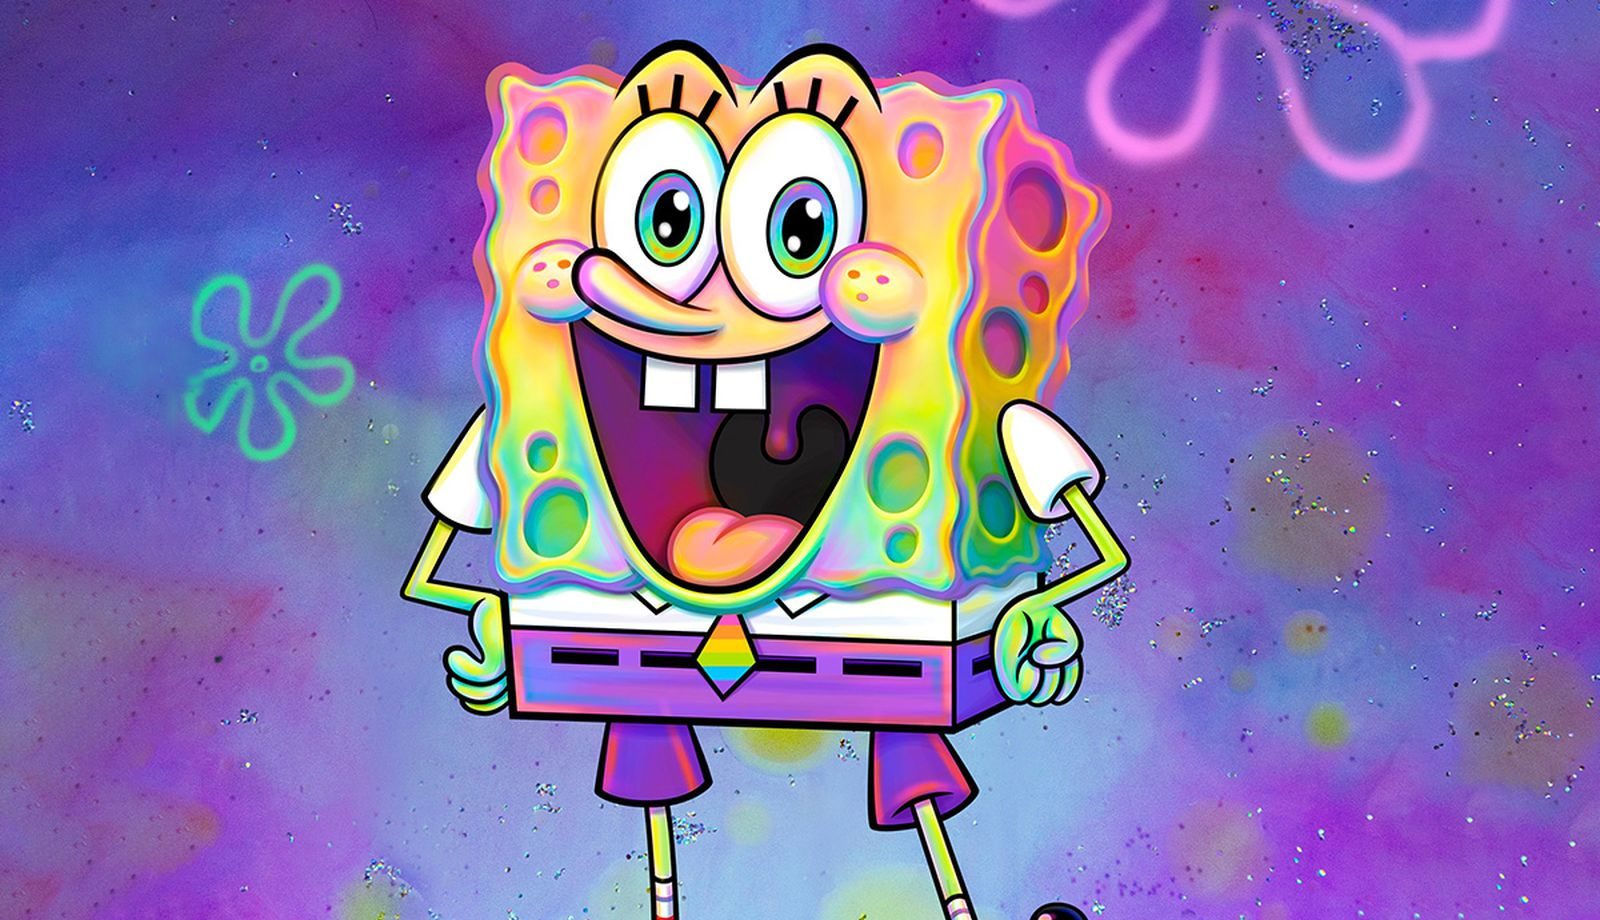 Spongebob last episode